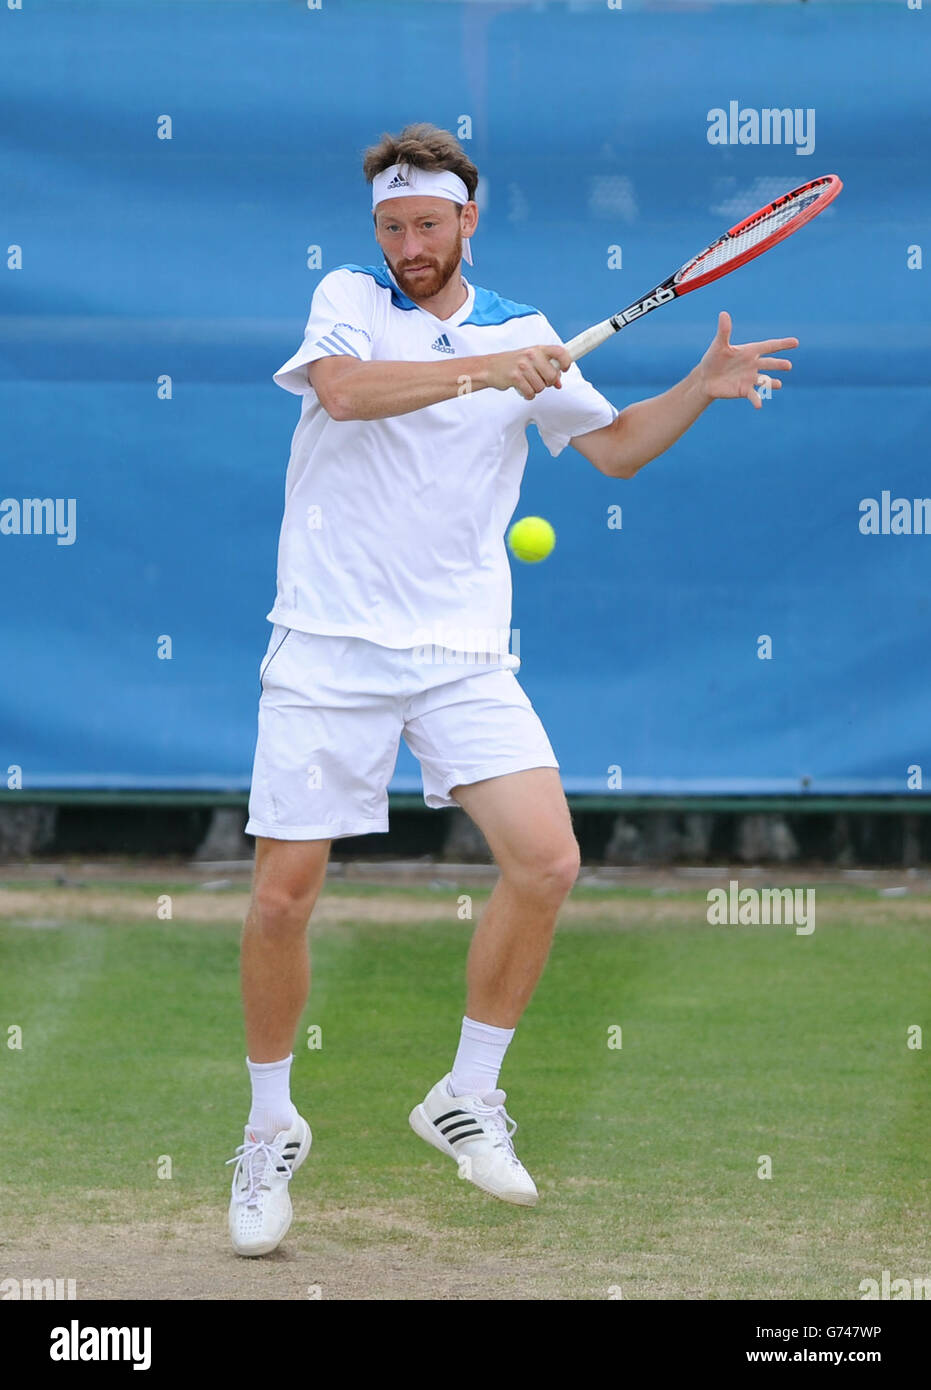 Miloslav Mecir della Slovacchia in azione contro Nick Kyrgios dell'Australia durante la AEGON Nottingham Challenge al Nottingham Tennis Center di Nottingham. Foto Stock